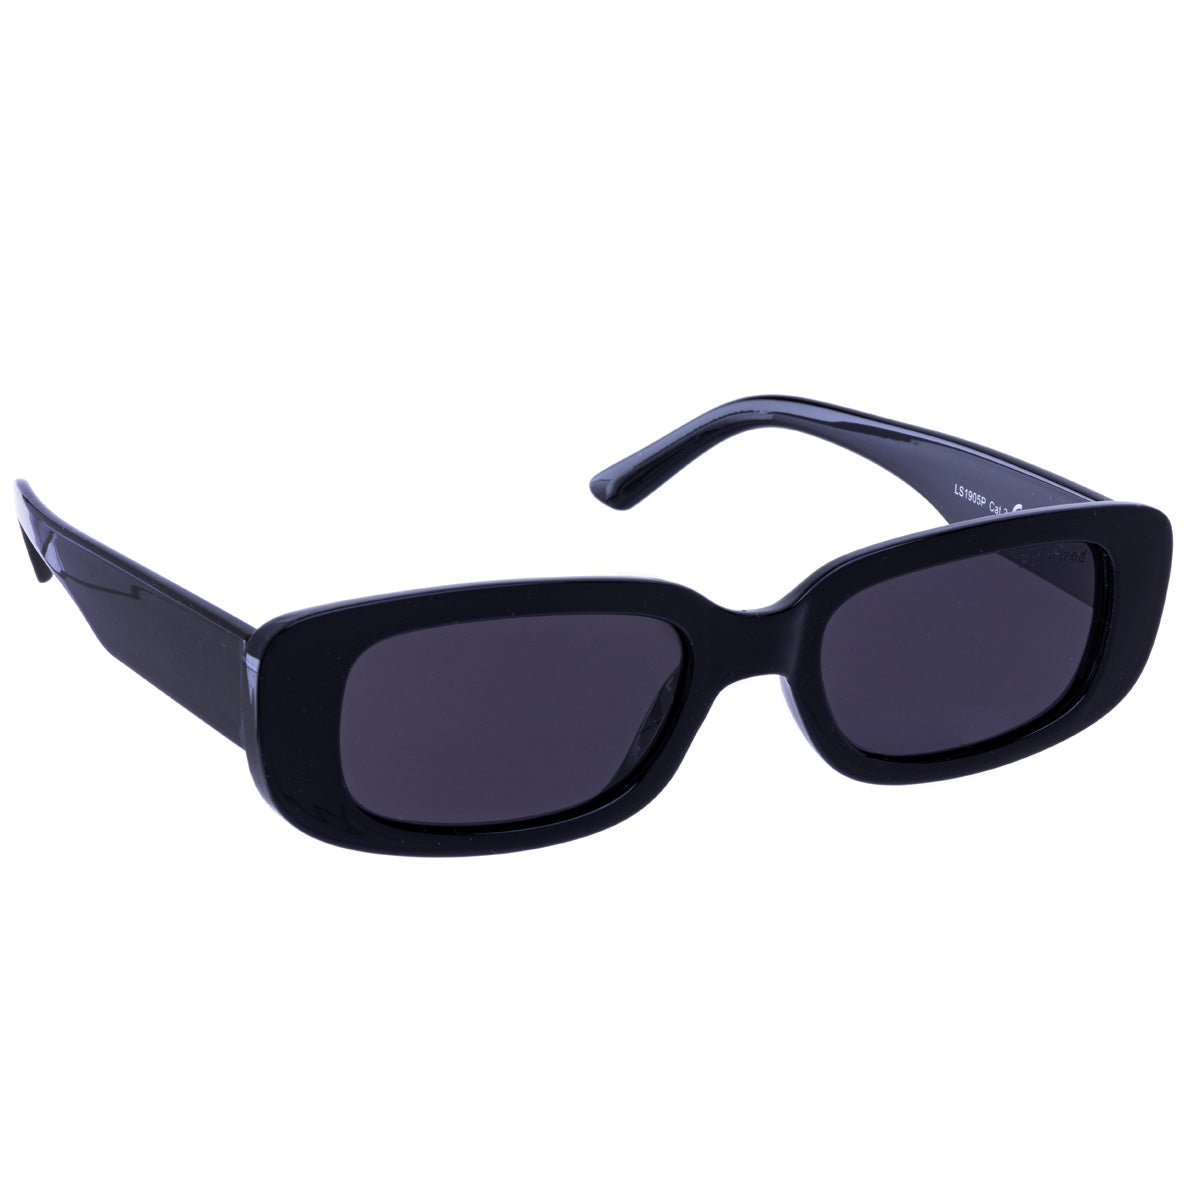 Rectangular polarised sunglasses